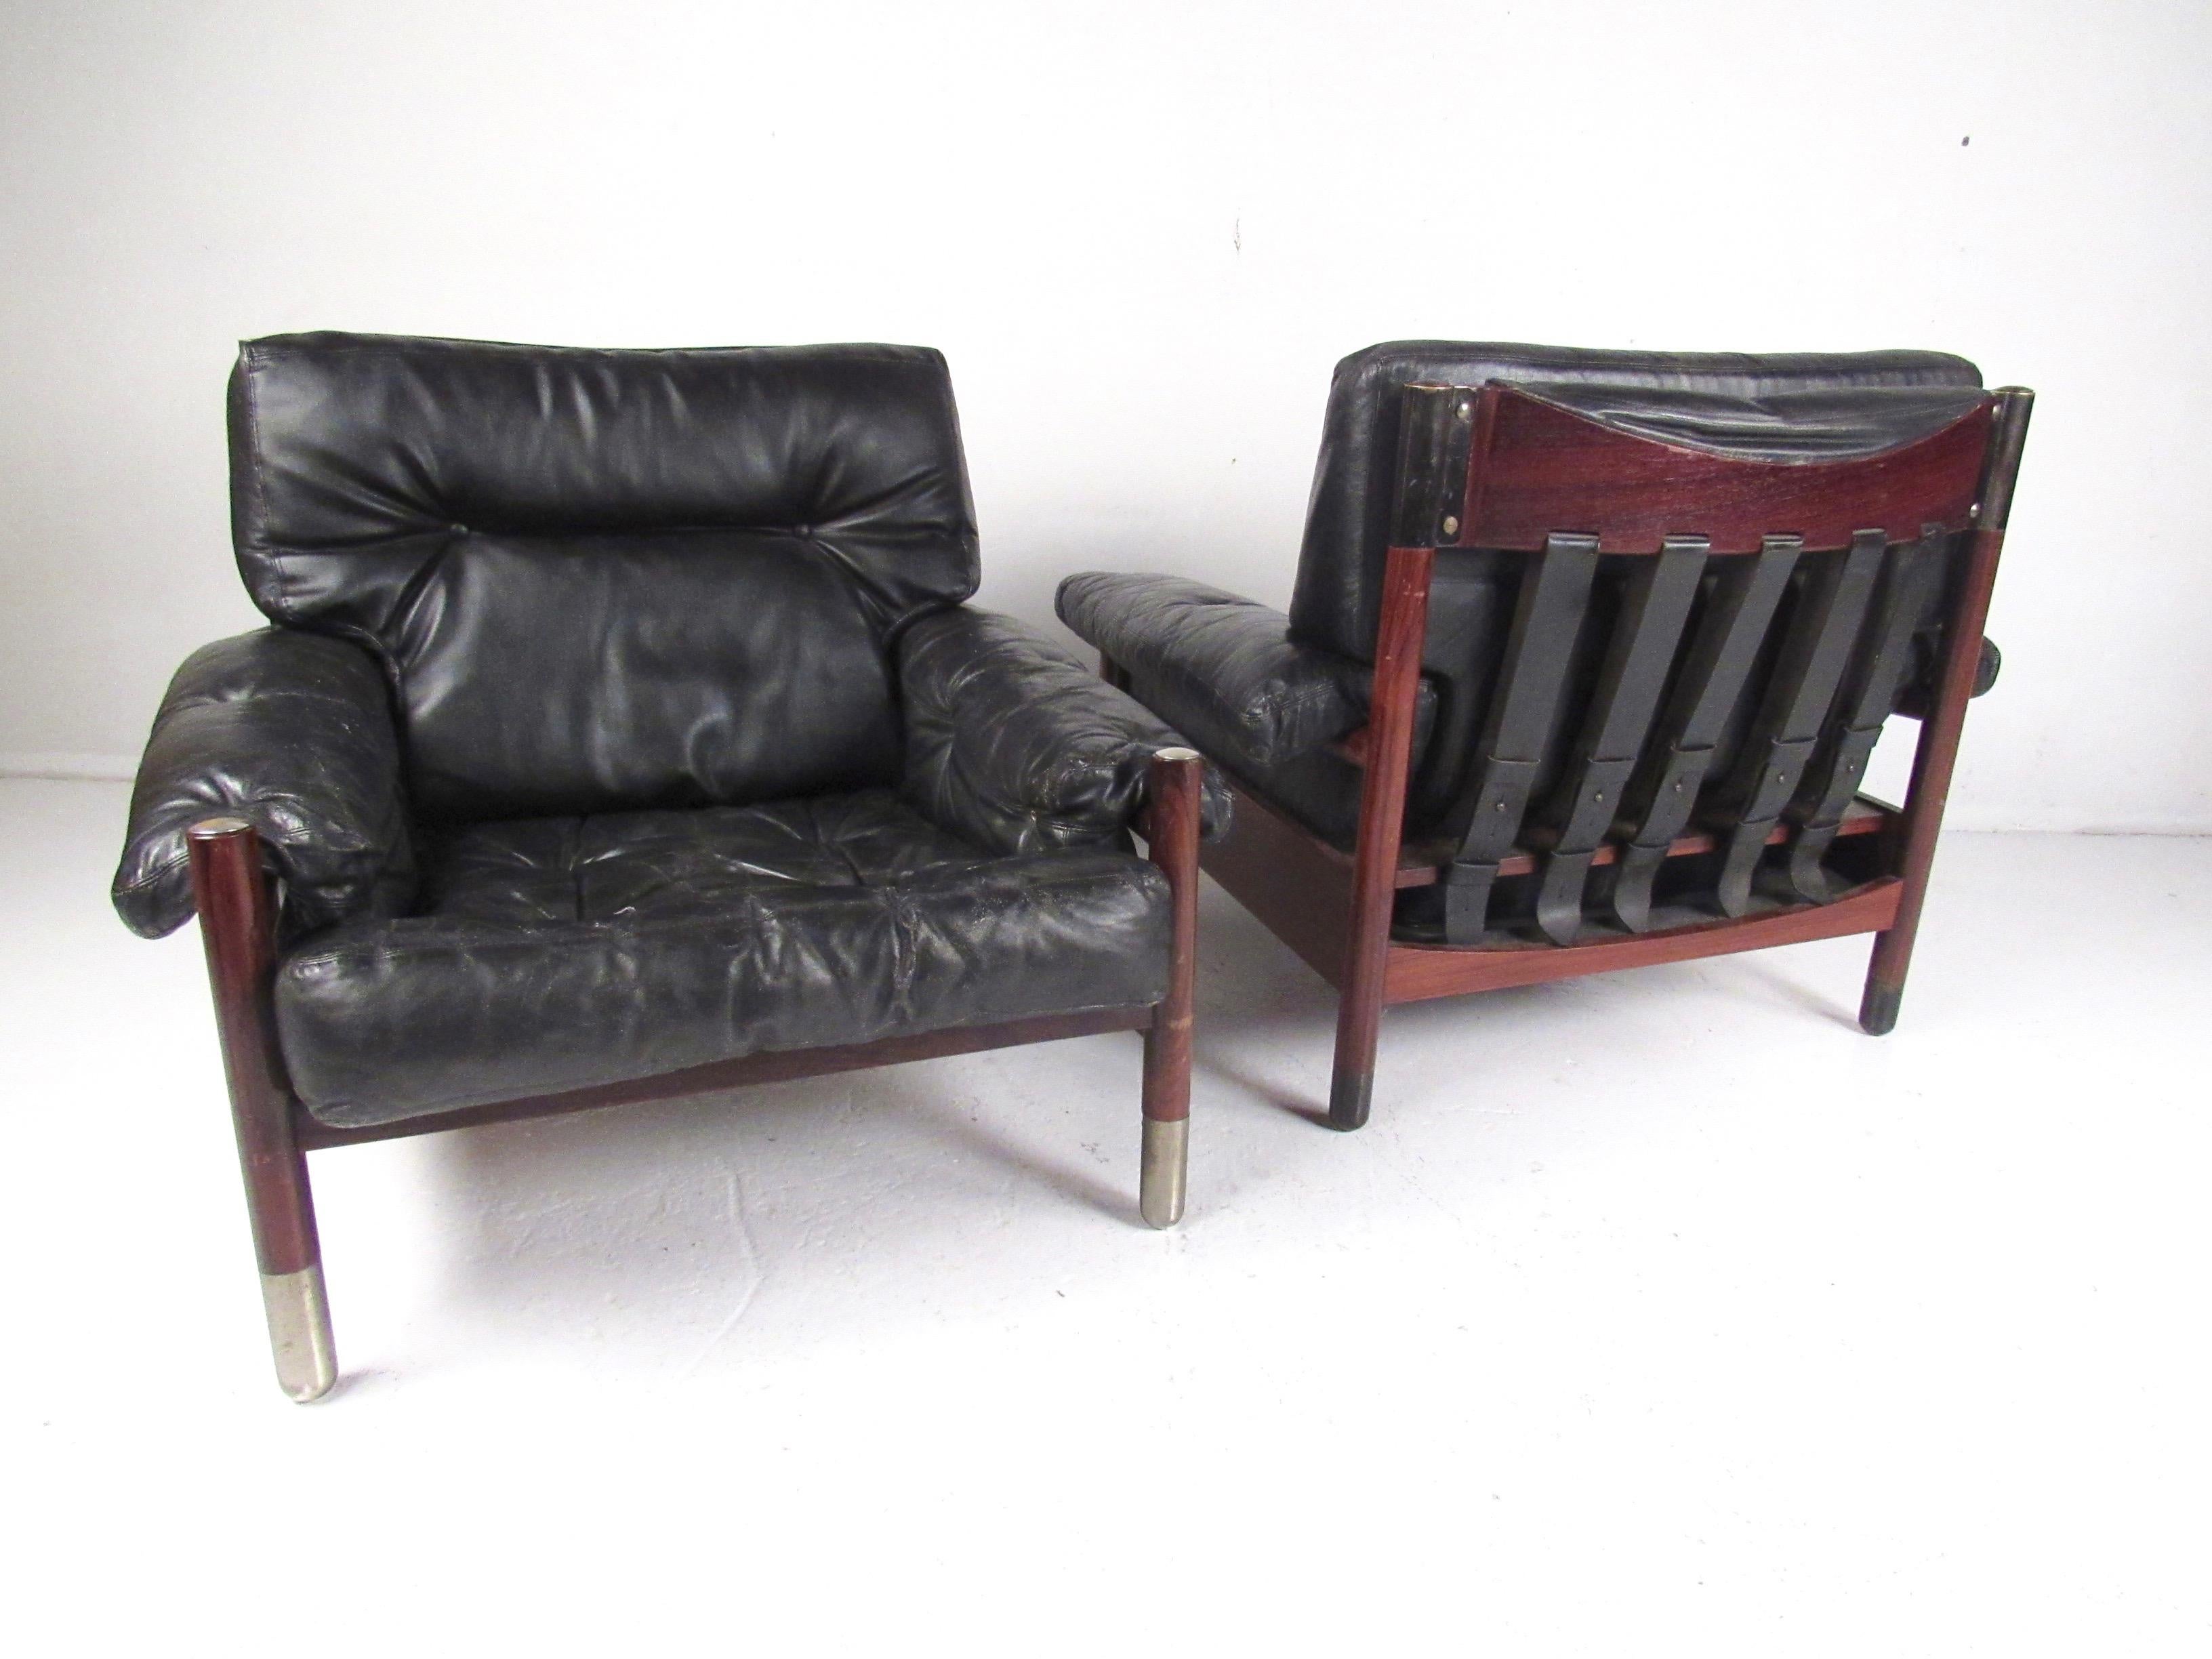 Cette paire élégante de chaises longues modernes du milieu du siècle par Carlo de Carli pour Sormani ajoute un style italien vintage élégant aux sièges de la maison ou du bureau. La sellerie et les sangles en cuir vintage en font une paire de